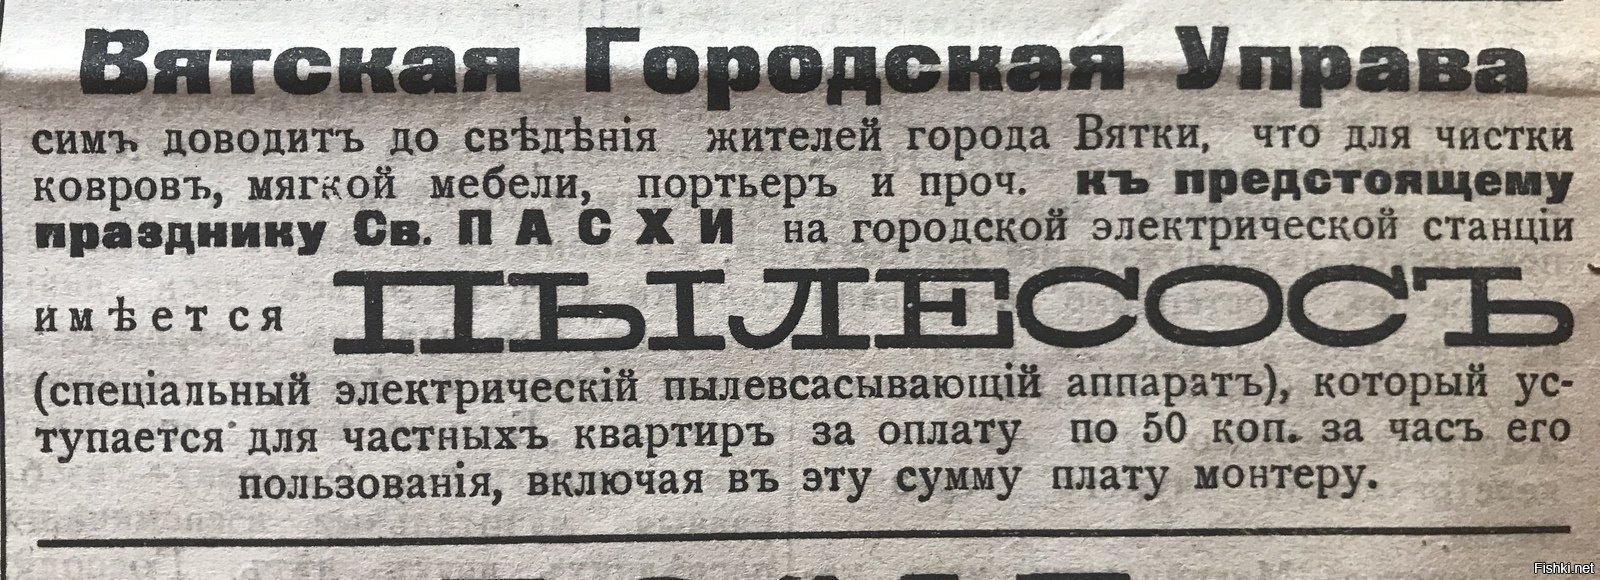 Из газеты «Вятская речь», 1915 г